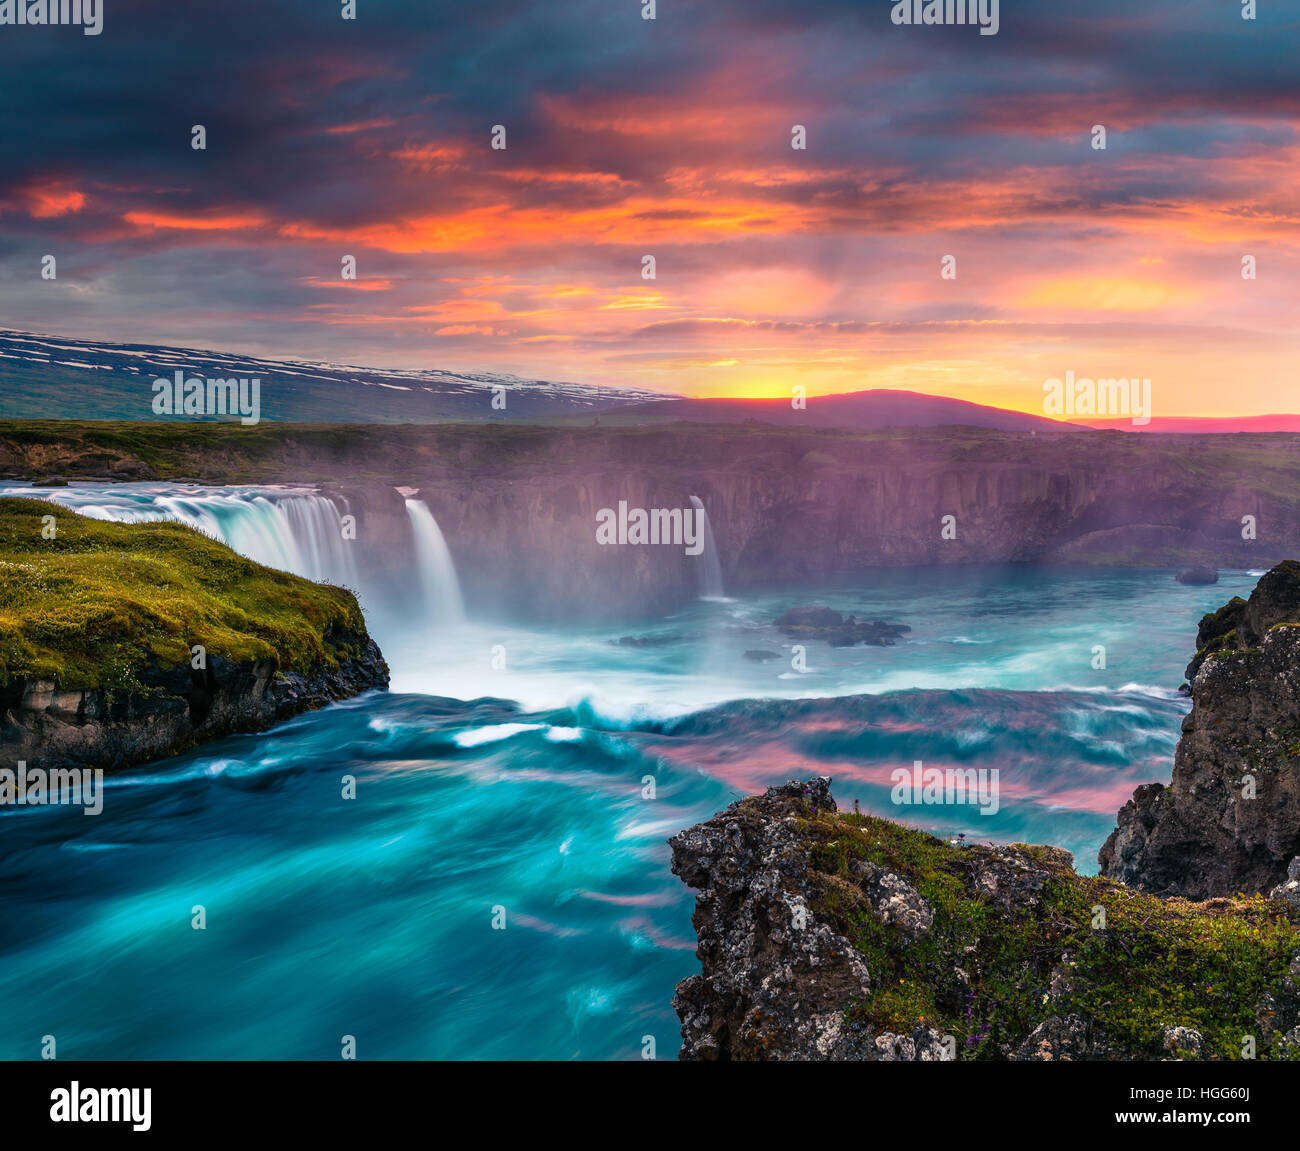 Mañana de Verano escena en la cascada Godafoss. Colorido atardecer sobre el río Skjalfandafljot, Islandia, Europa. Foto de stock